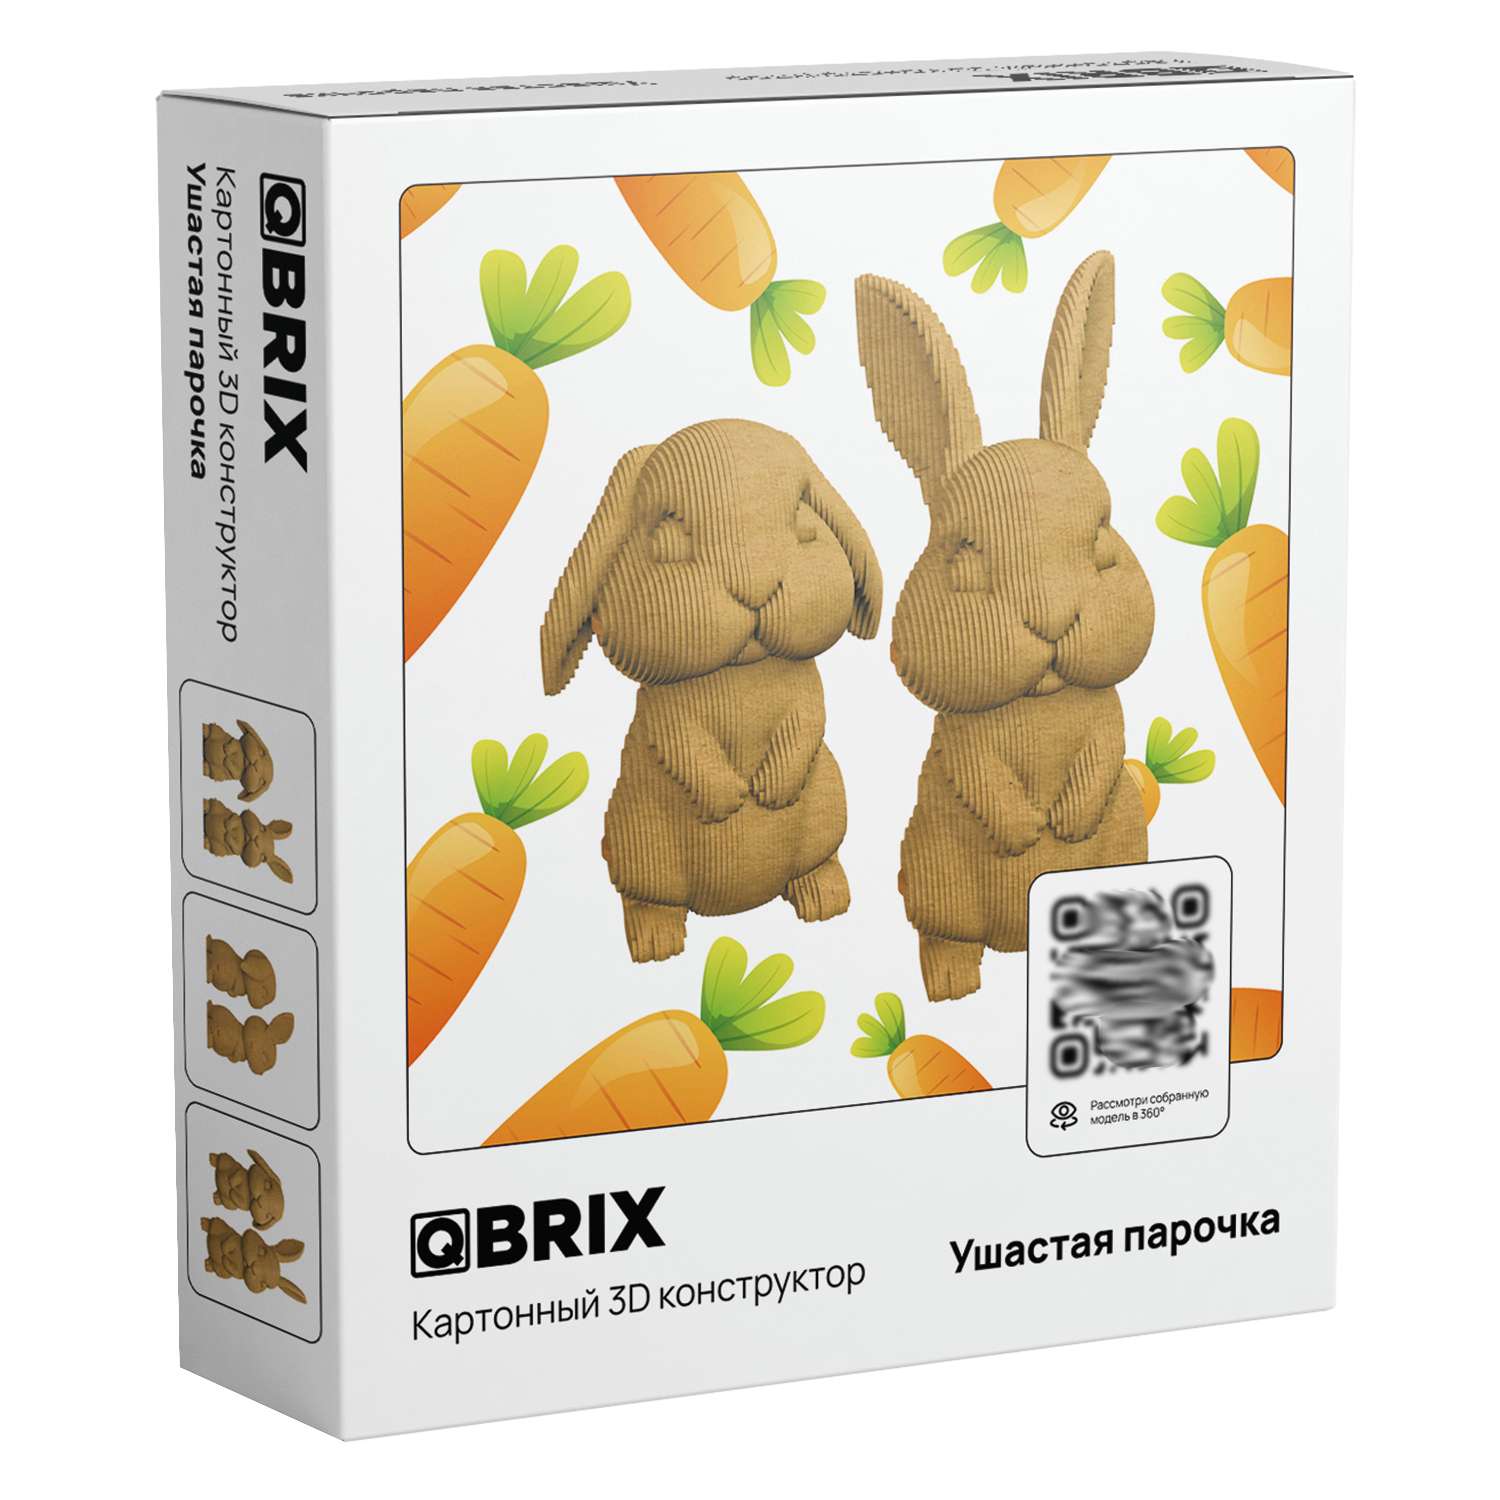 Конструктор QBRIX 3D картонный Ушастая парочка 20032 20032 - фото 1